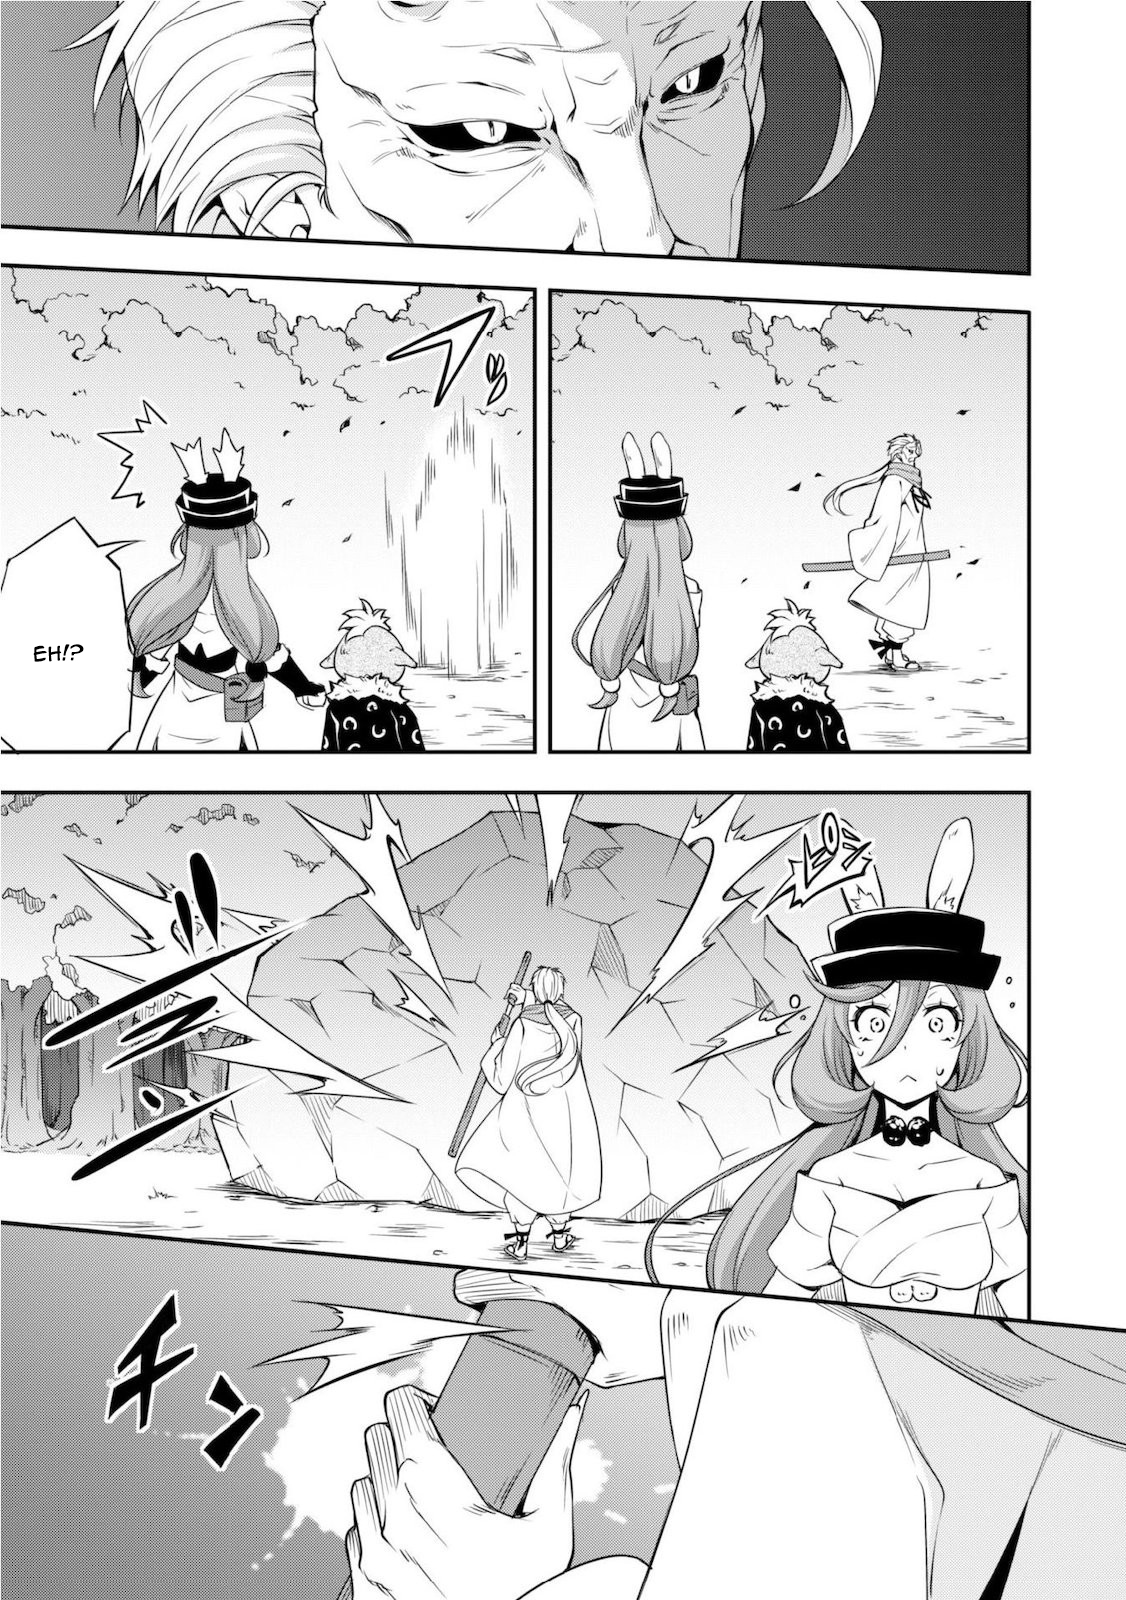 Tensei Shitara Slime Datta Ken: Mamono no Kuni no Arukikata Vol. 1 Ch. 3